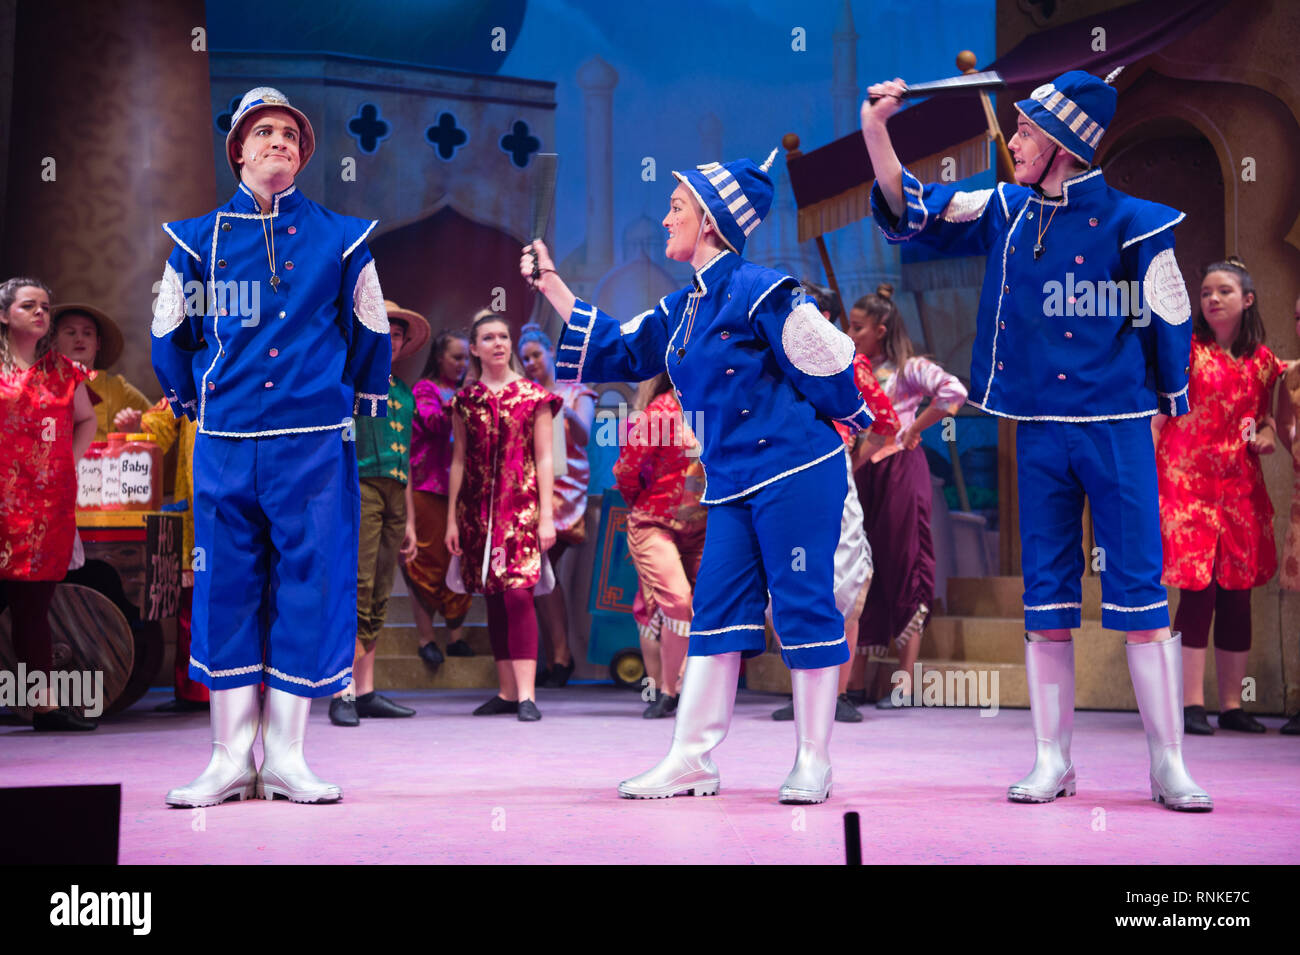 Pantomime traditionnelle britannique de divertissement familial de Noël : un non-amateur local professionnel theatre company (les gardiens) sur scène à Aberystwyth Arts Centere. Janvier 2019 Banque D'Images